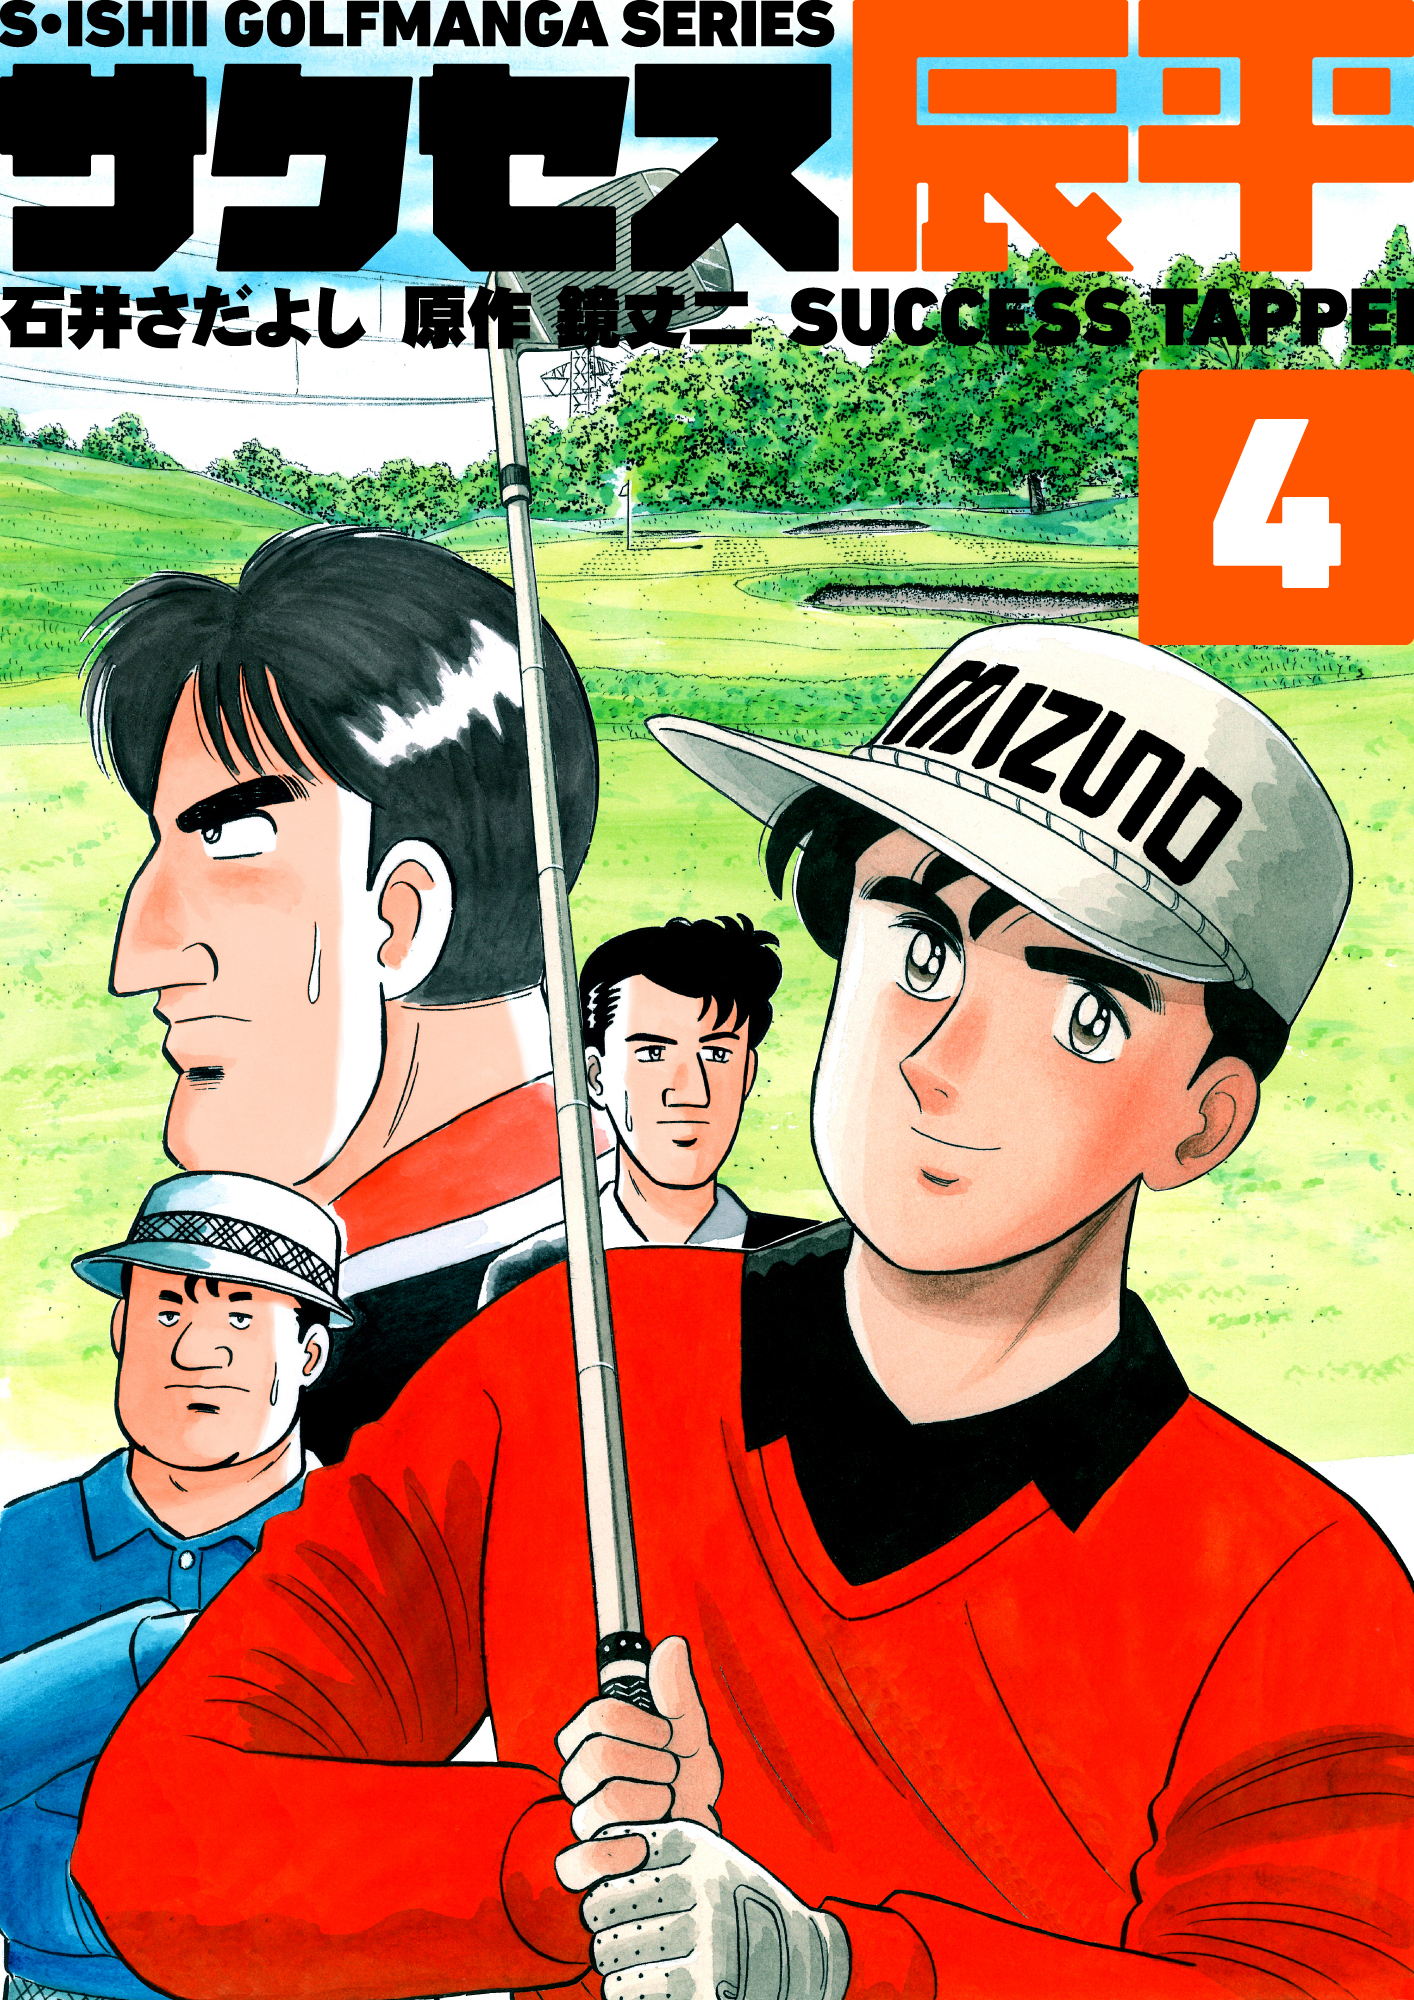 石井さだよしゴルフ漫画シリーズ サクセス辰平 4巻 漫画 無料試し読みなら 電子書籍ストア ブックライブ